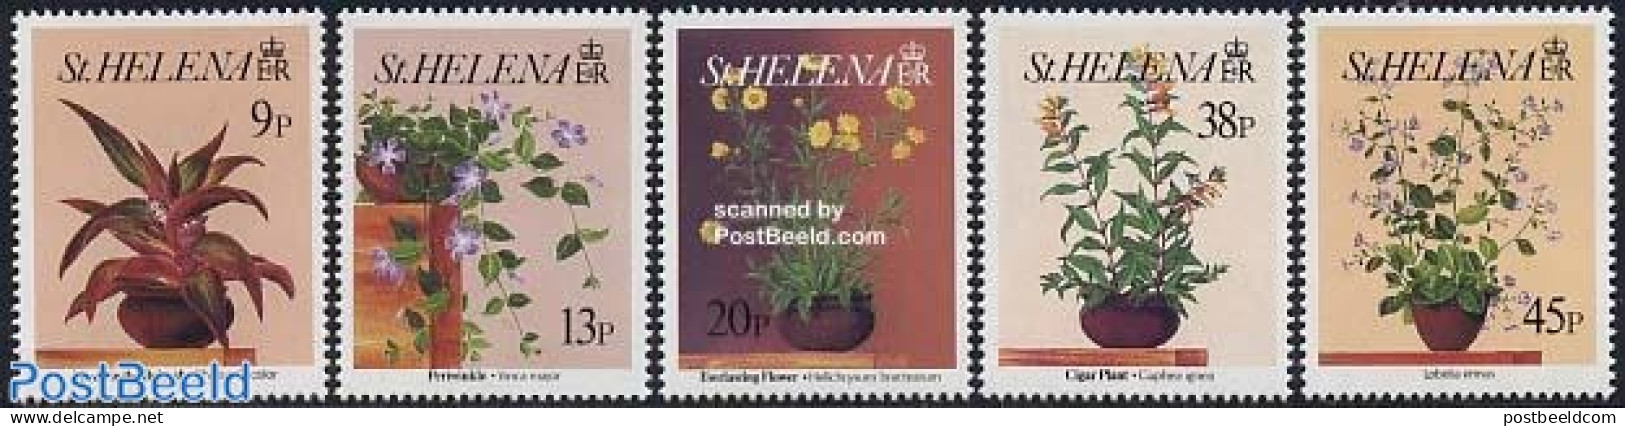 Saint Helena 1993 Flowers 4v, Mint NH, Nature - Flowers & Plants - Saint Helena Island